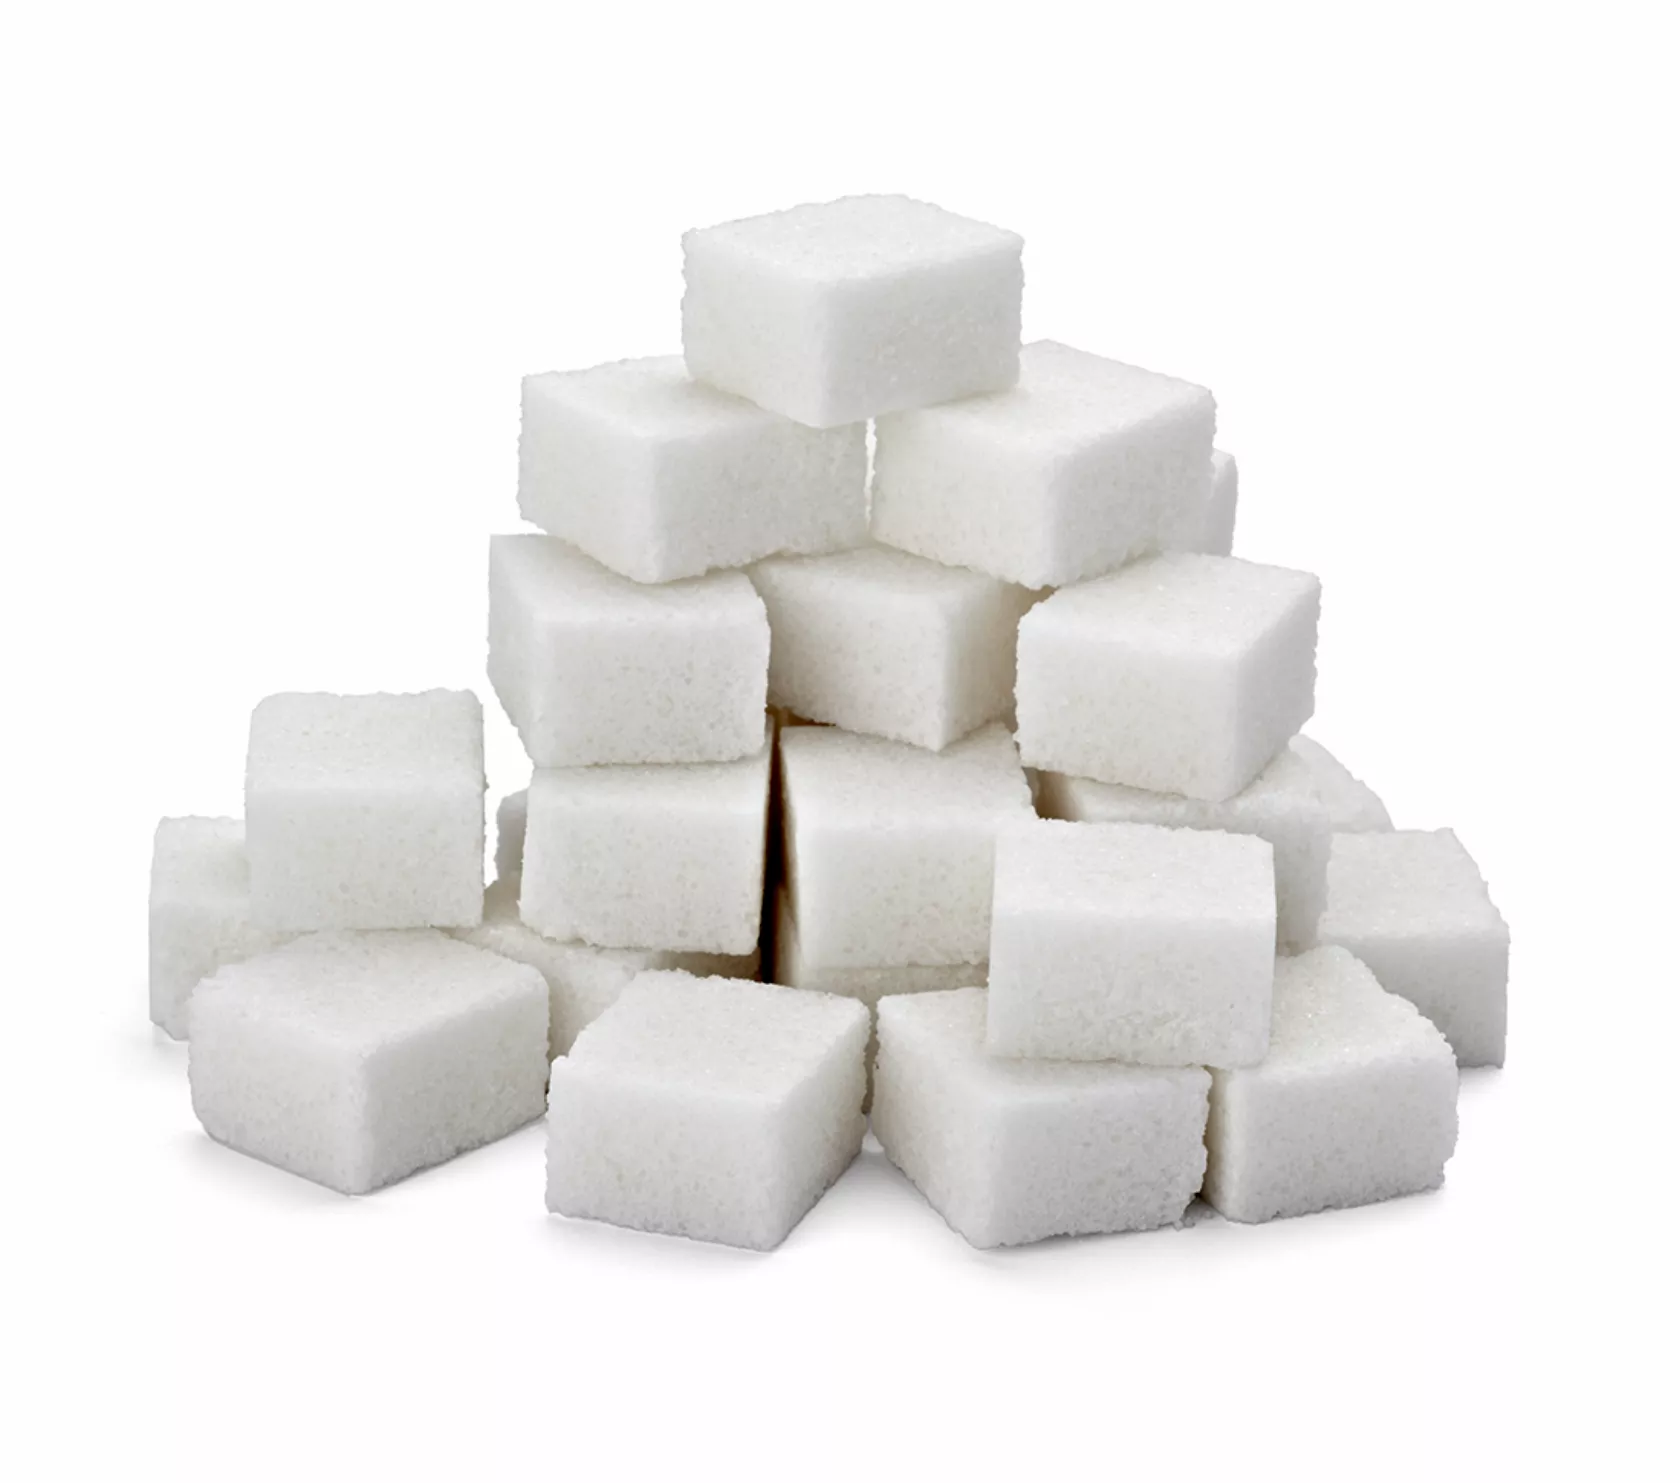 Aufeinander gestapelte Zuckerwürfel als Symbol für Diabetes.